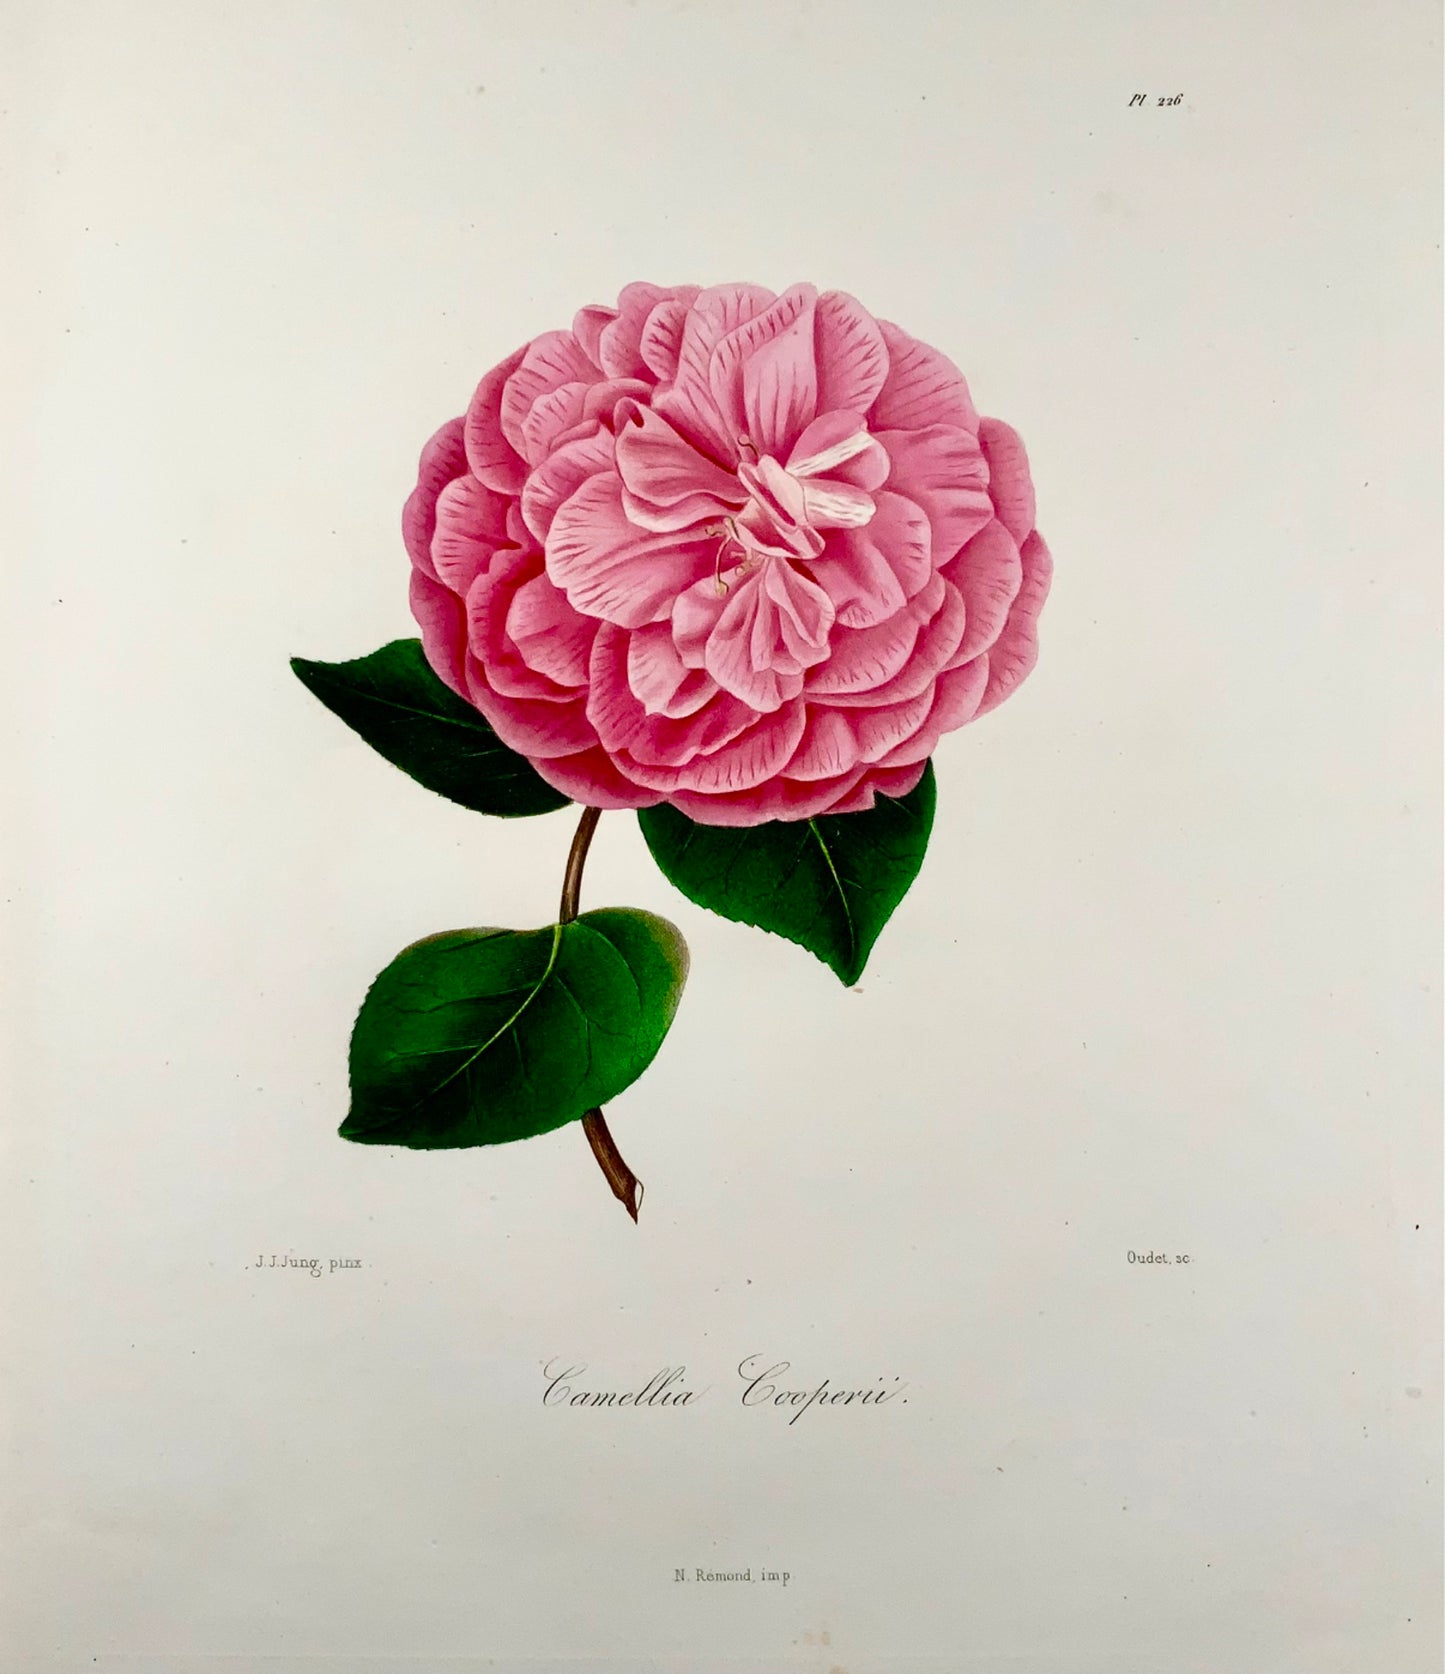 1841 Camelia Cooperii [Camellia], Dessiné par JJ Jung, Gravé par Oudet, Berlèse, Botanique